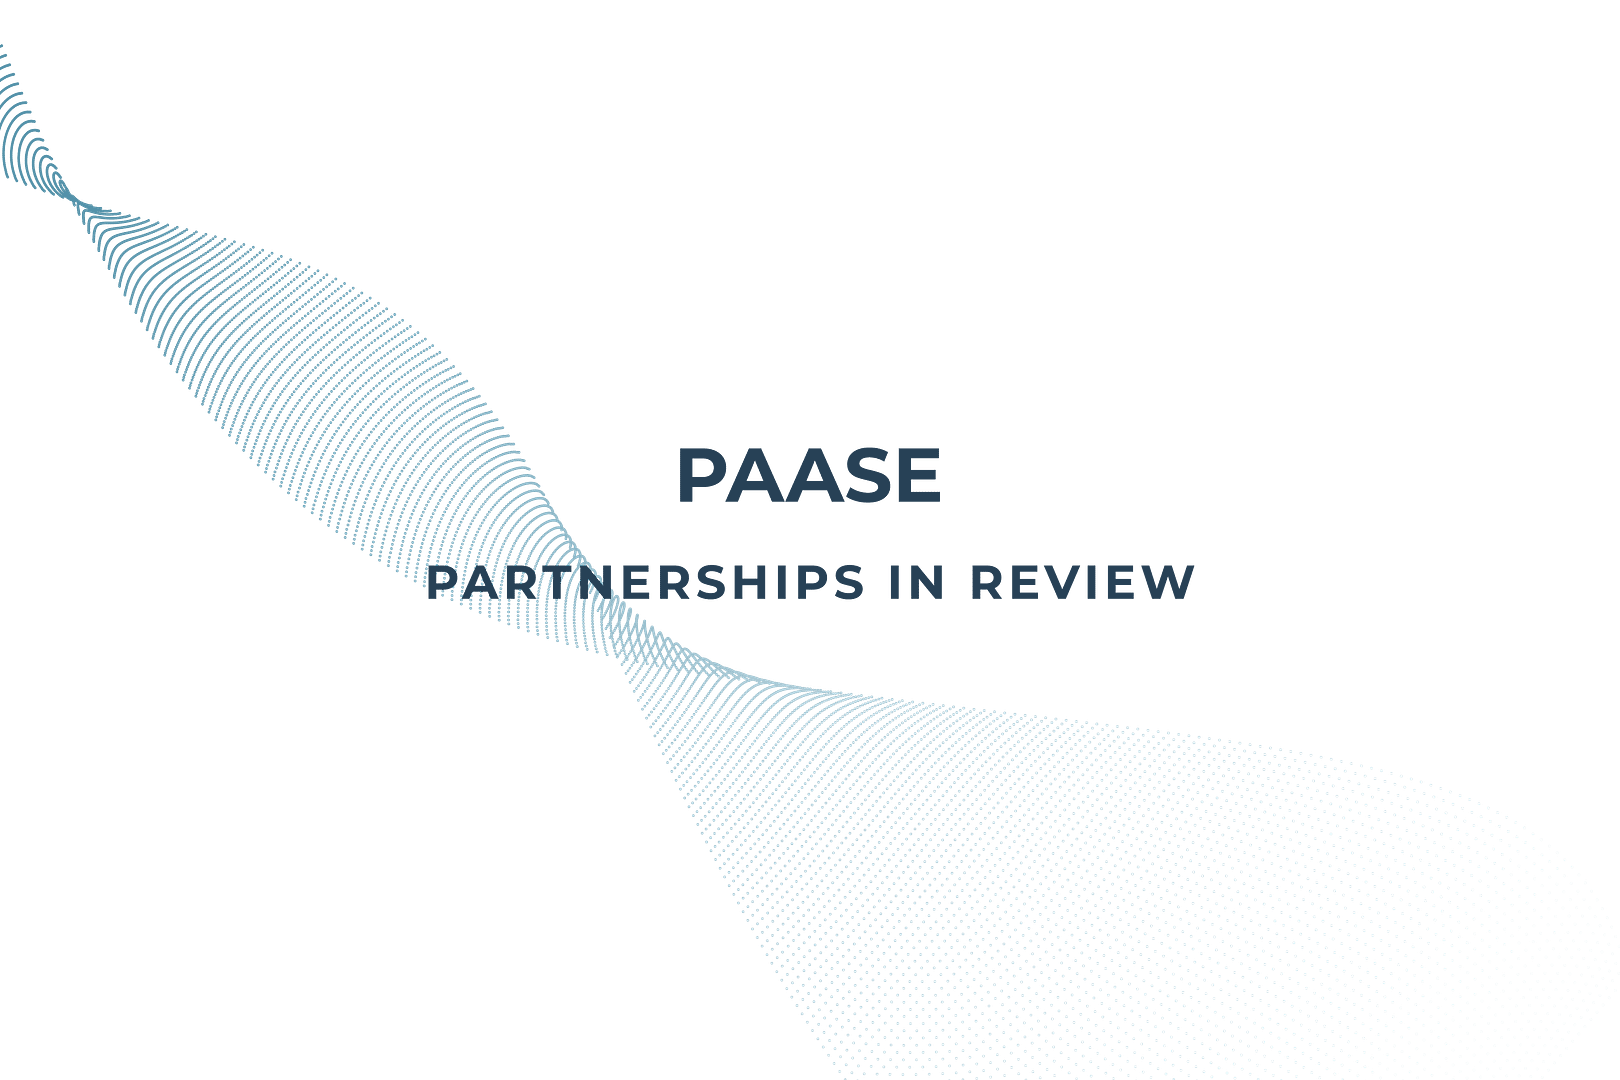 PAASE eCommerce partnerships